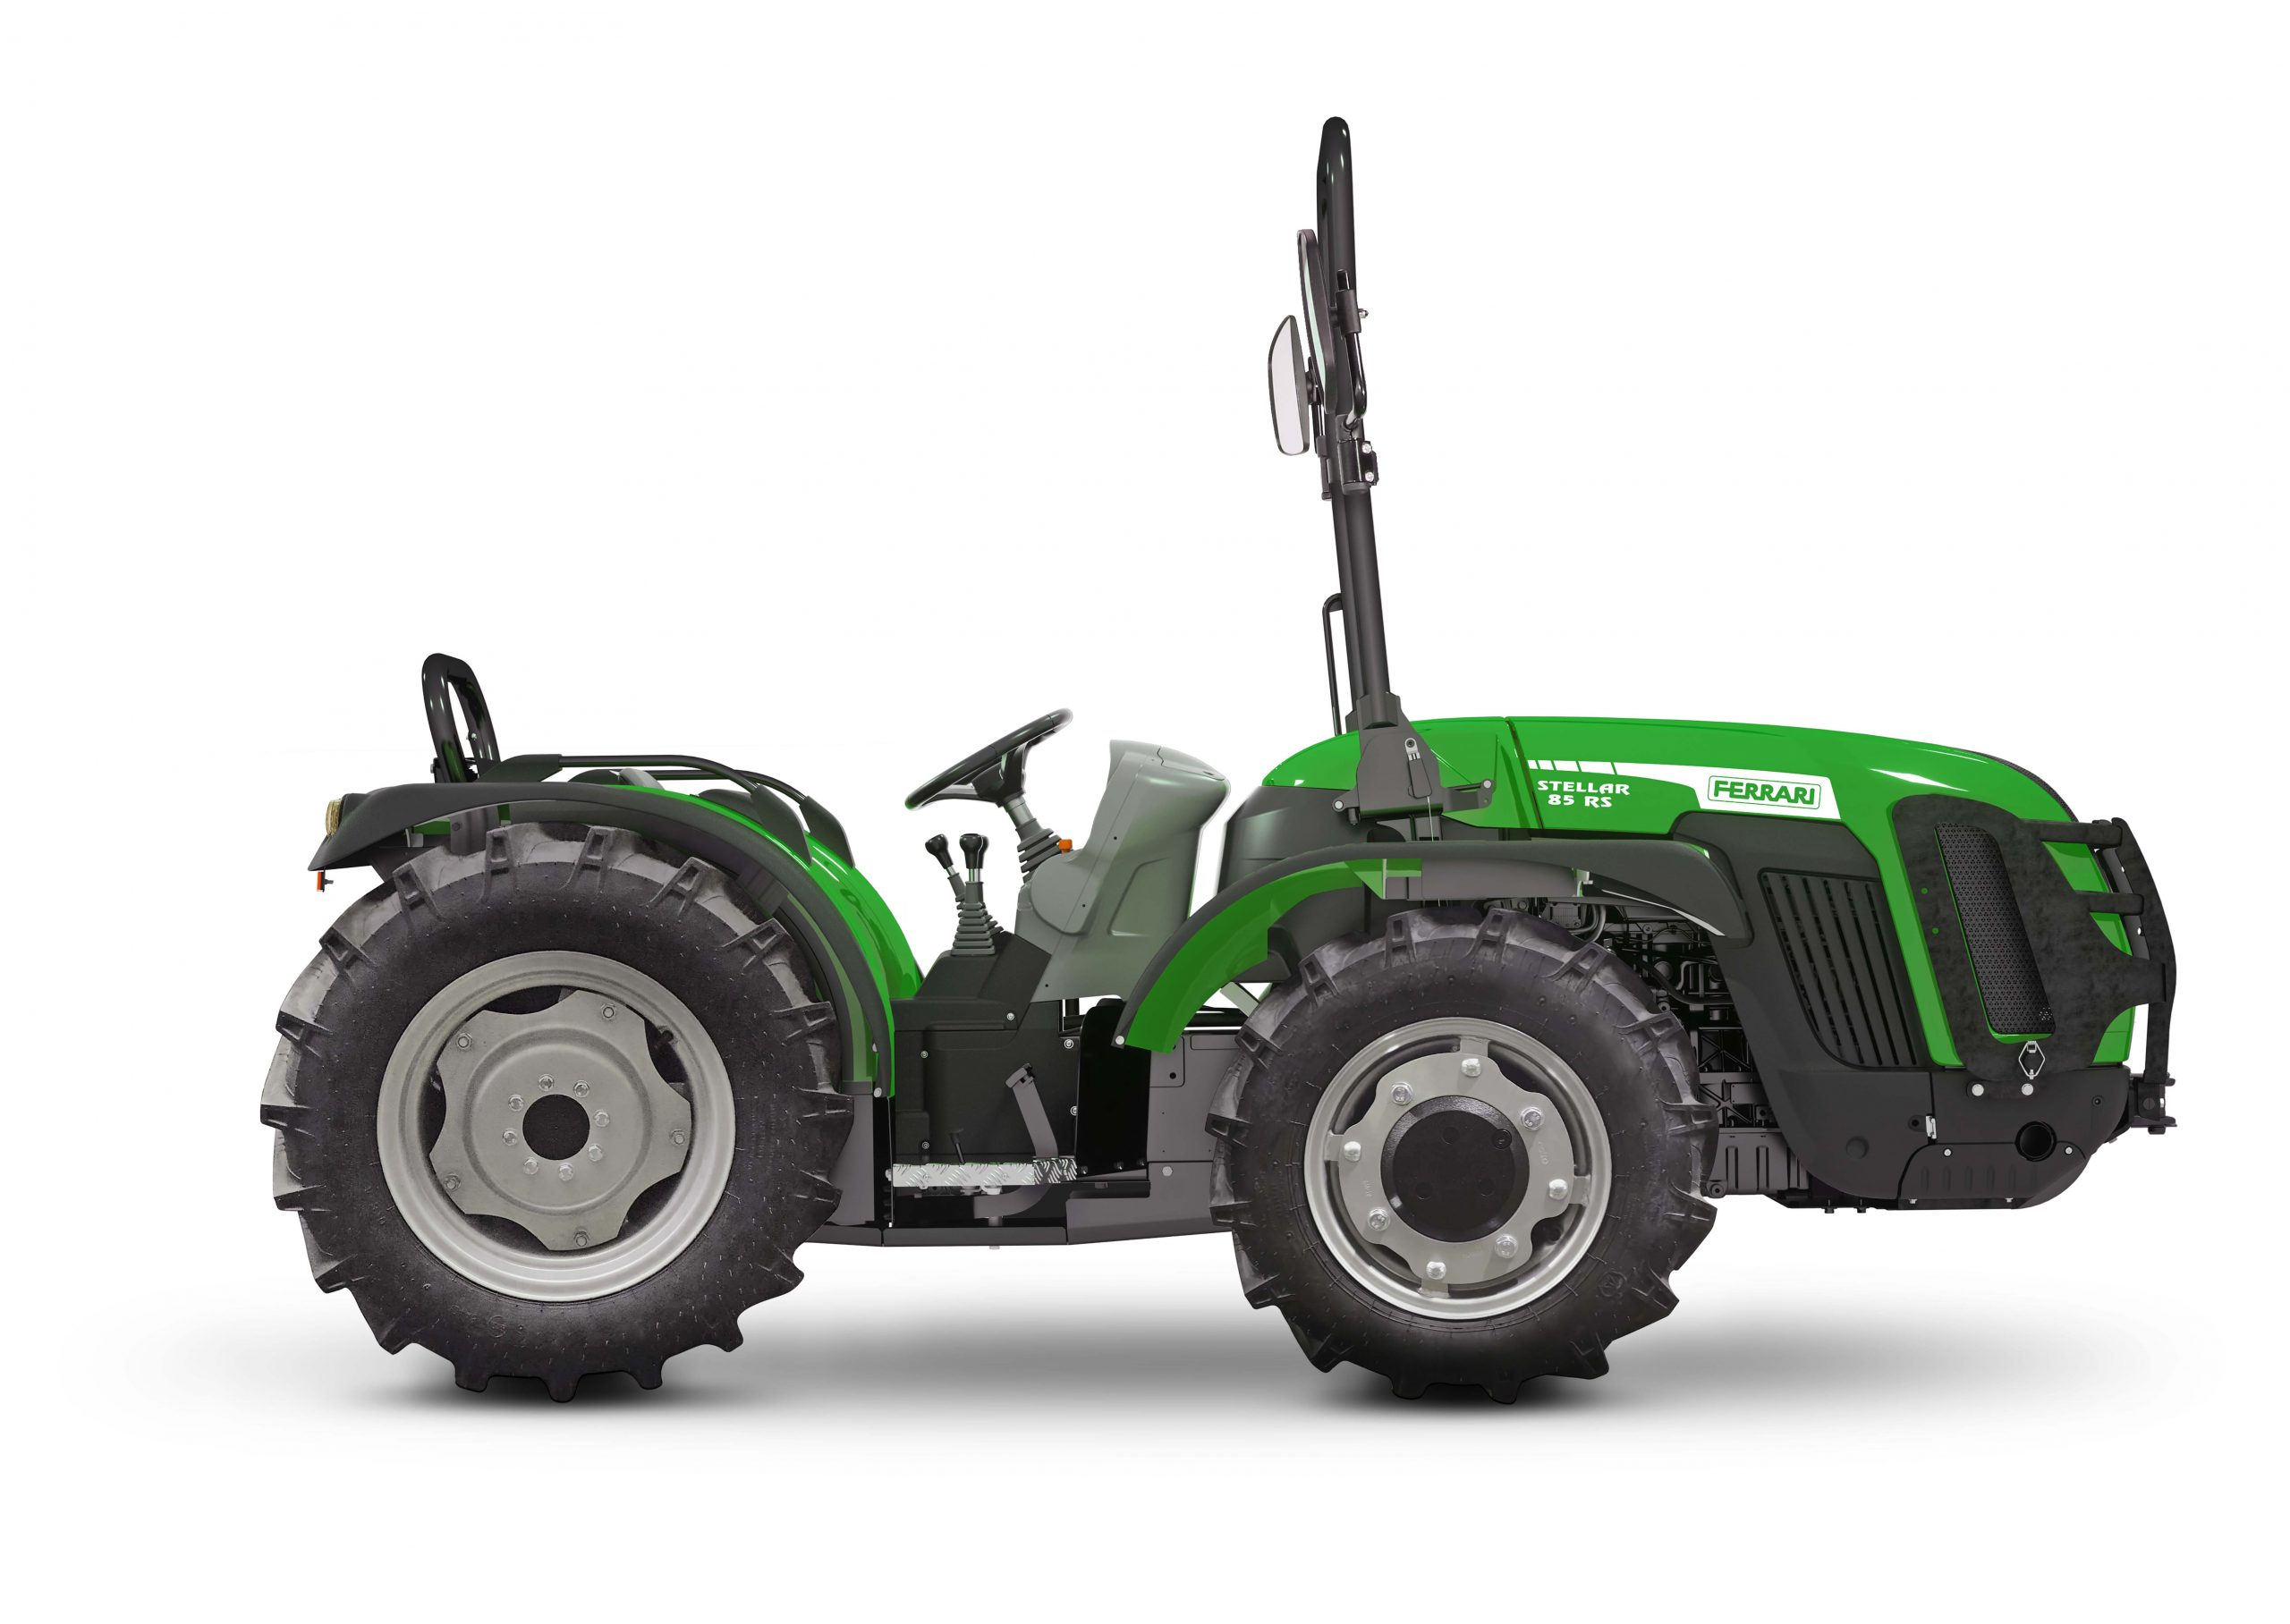 Tracteur agricole à 4 cylindres turbo compressés et châssis rigide à roues directrices - ferrari stellar 85 sdt rs de 75,3 cv_0